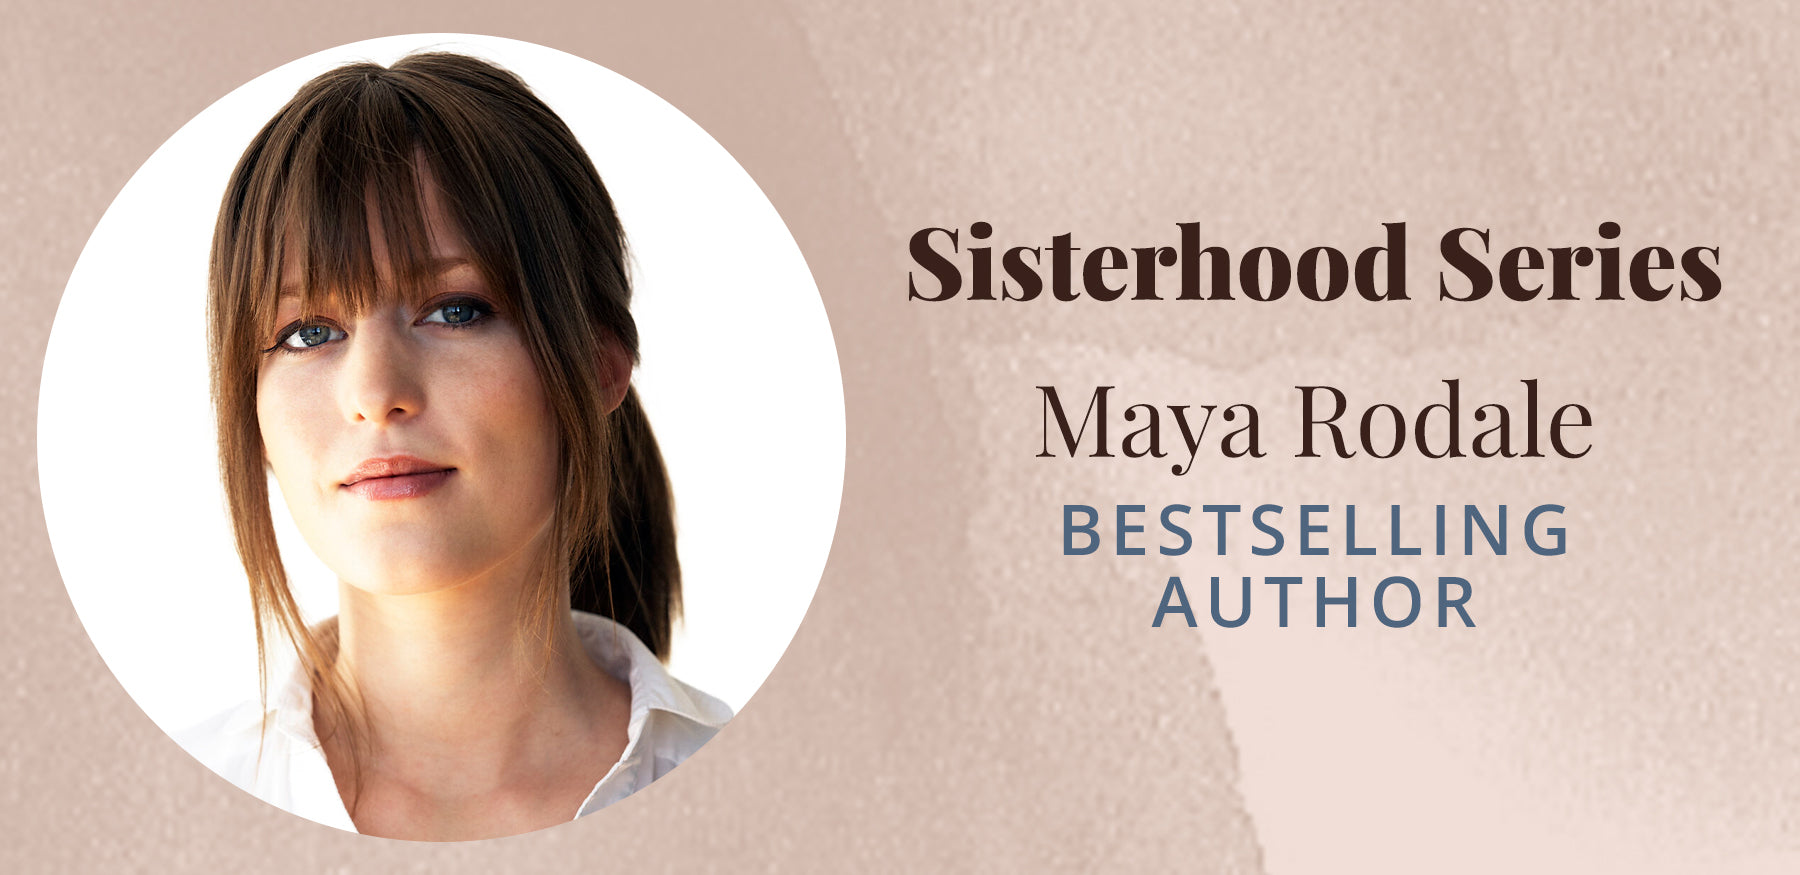 <!--The Sisterhood Series with Maya Rodale-->